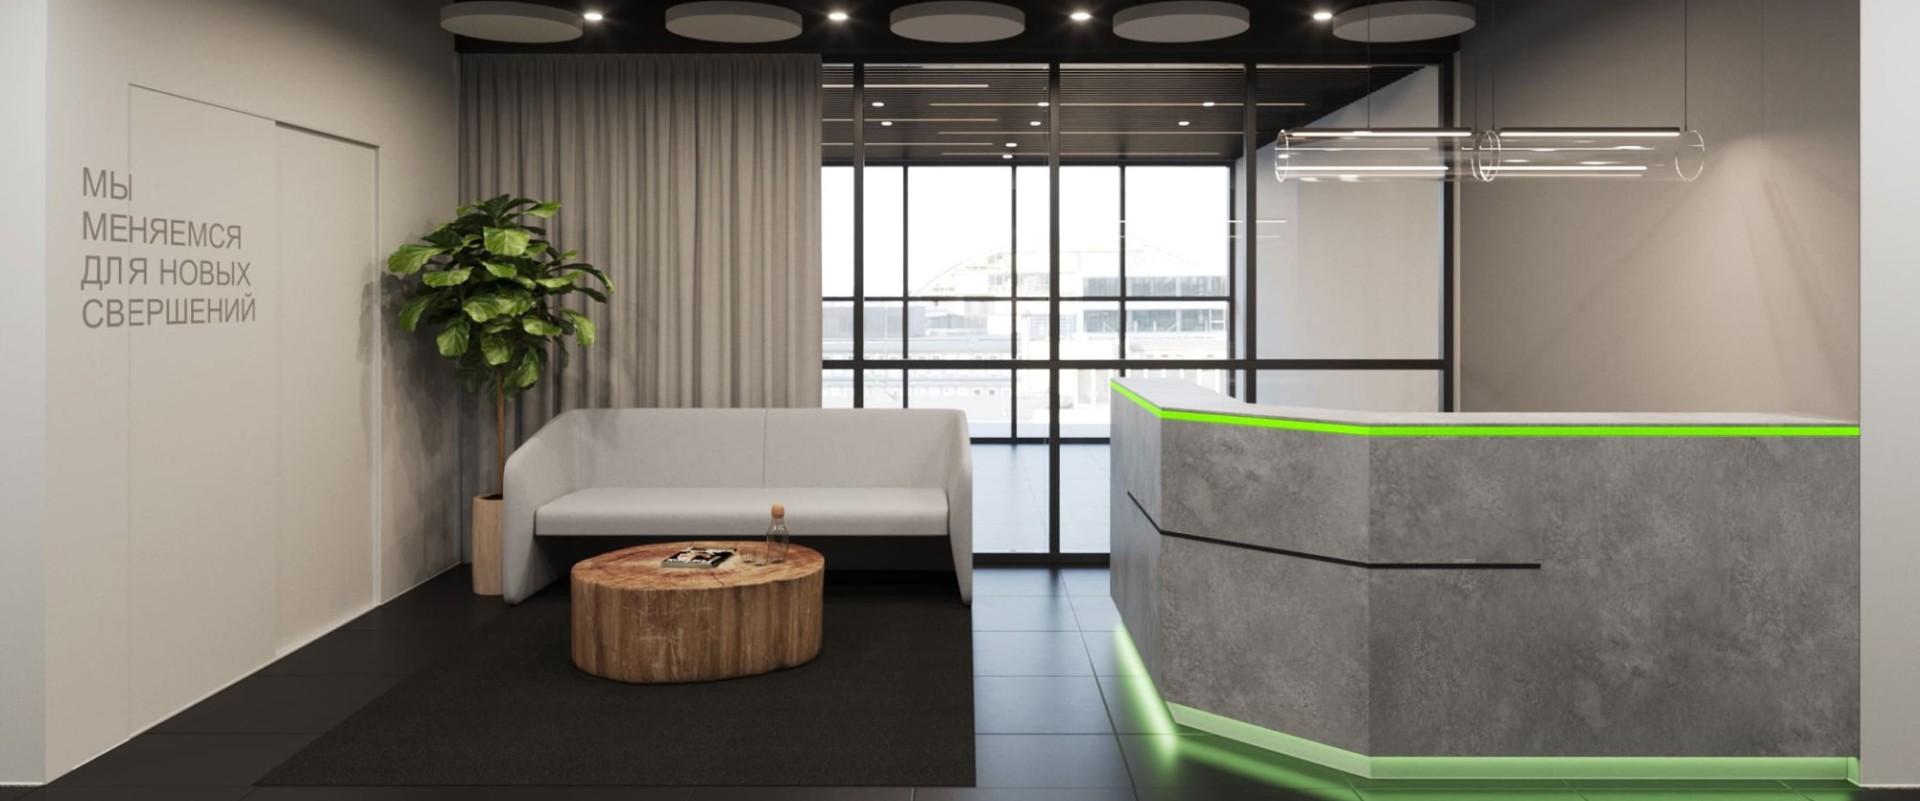 Дизайн офиса логистической компании, которая транспортирует нефтепродукты, — как отразить в интерьере экологичность и безопасность 